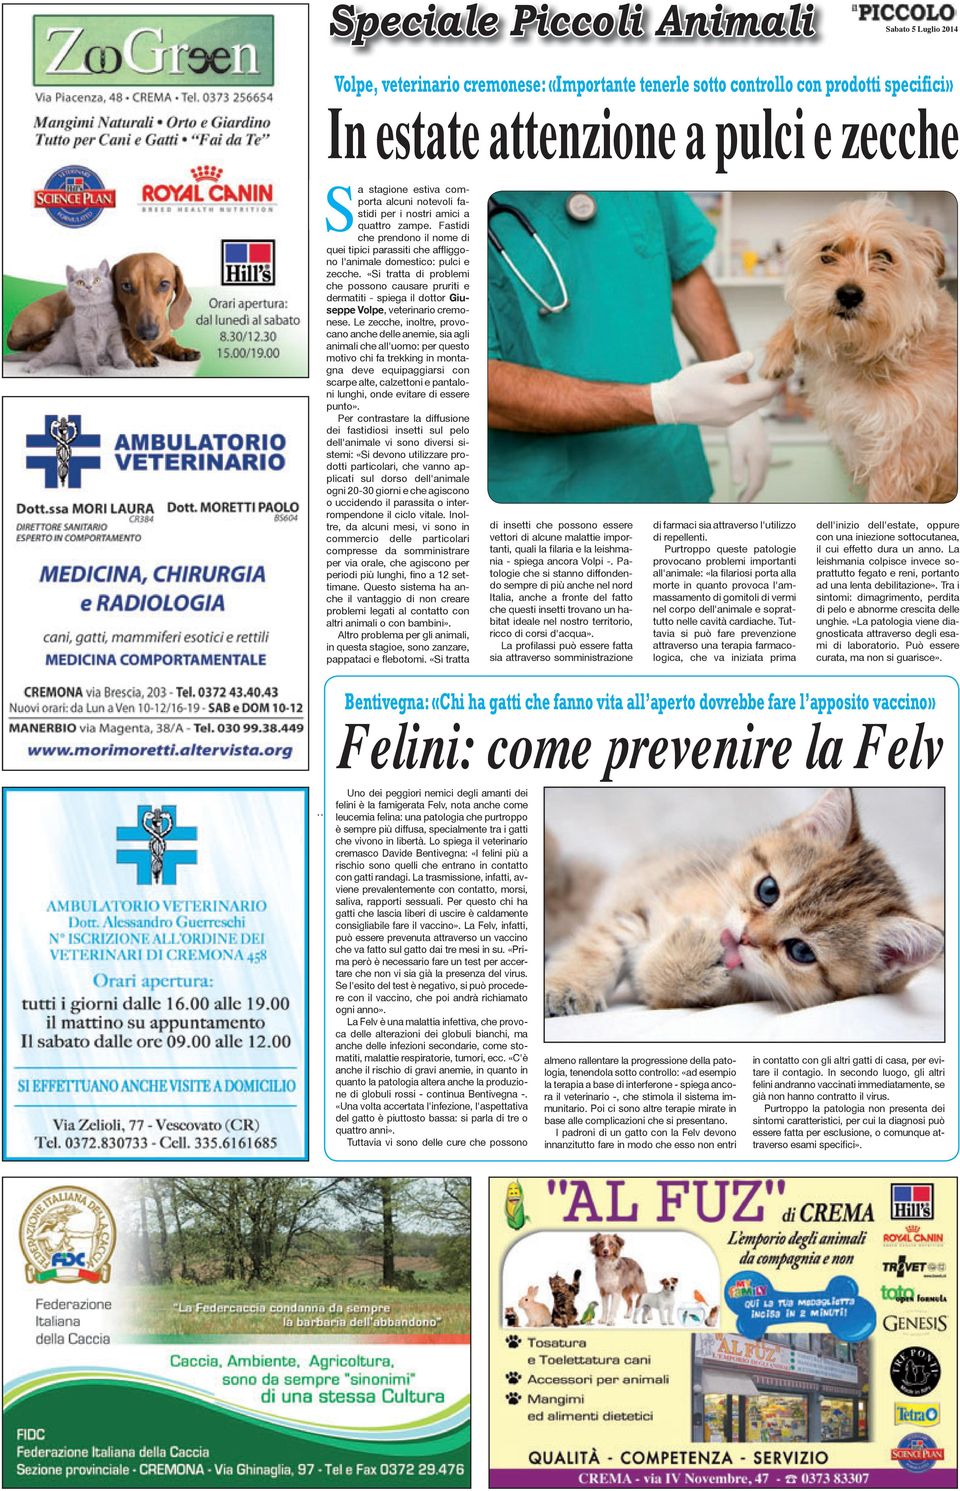 «Si tratta di problemi che possono causare pruriti e dermatiti - spiega il dottor Giuseppe Volpe, veterinario cremonese.